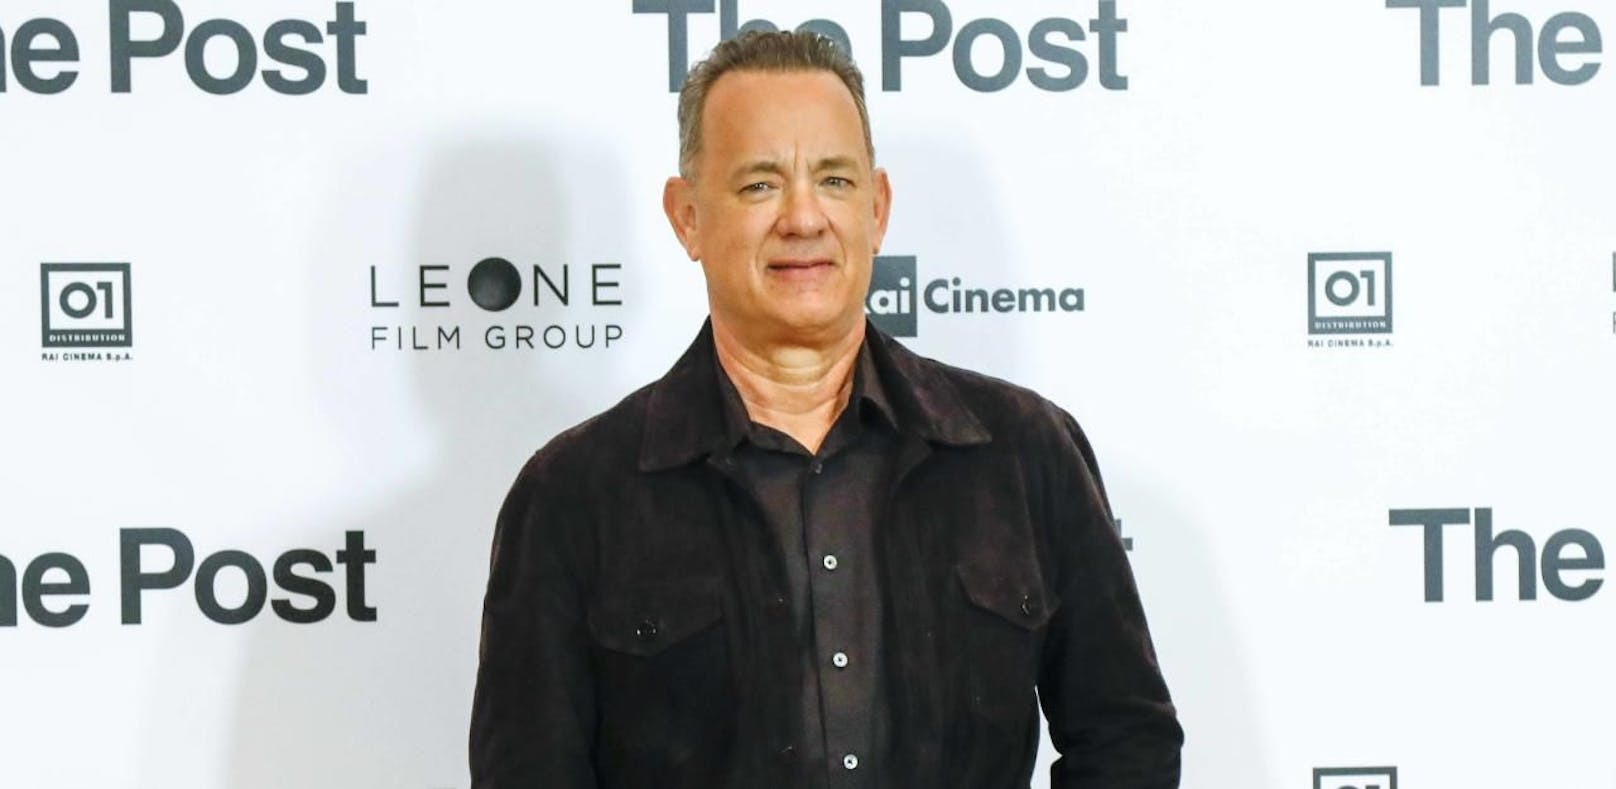 Tonmeister stirbt am Set von Film mit Tom Hanks